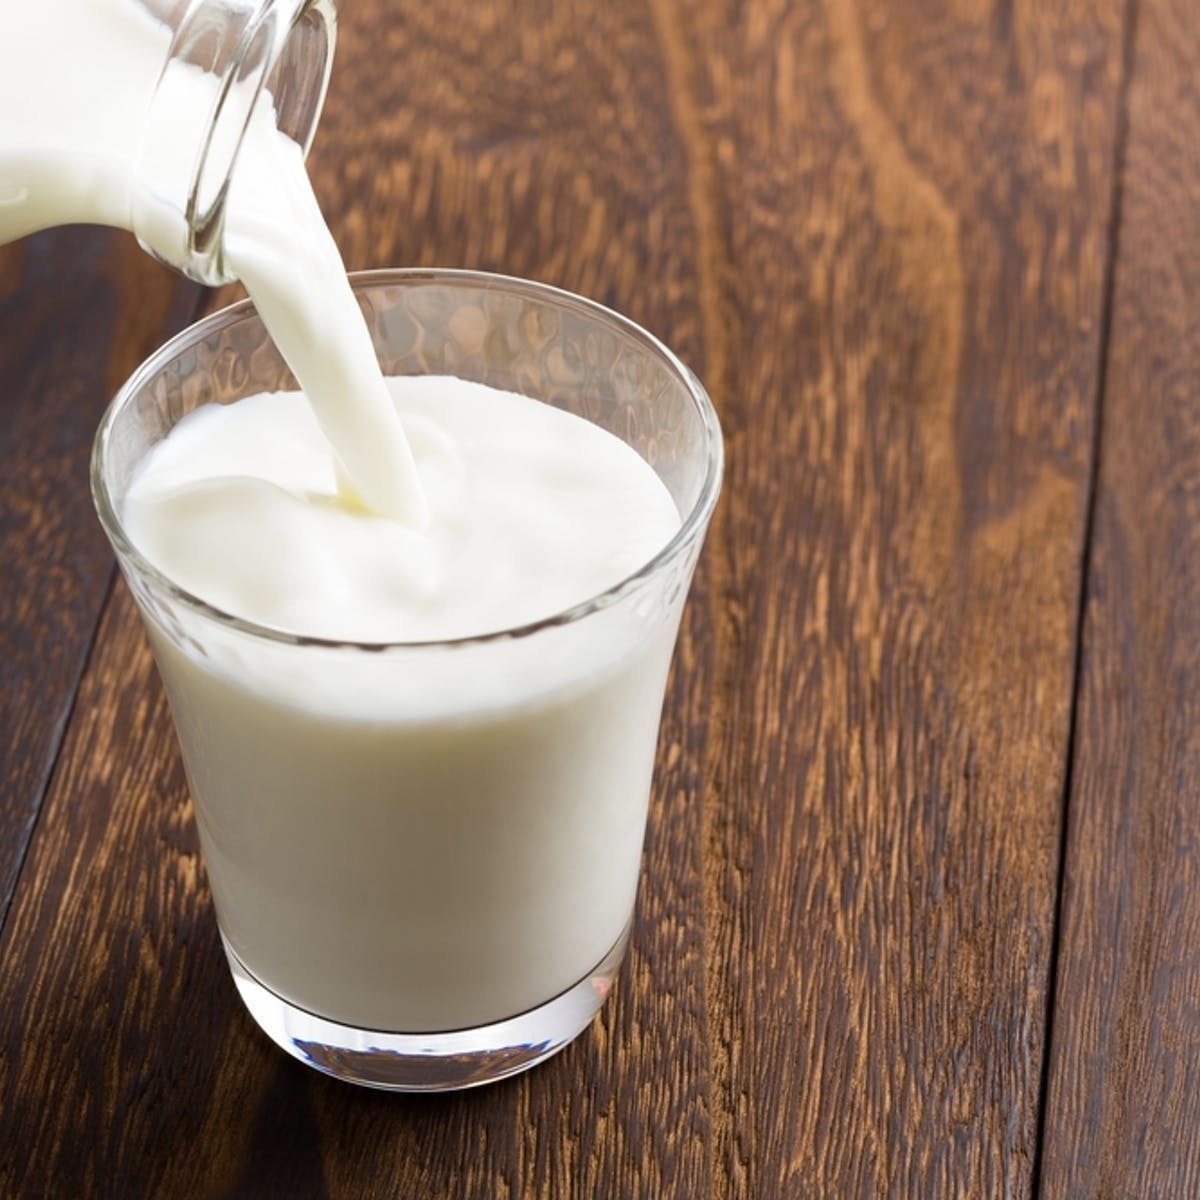 الحليب مشروب لزيادة الرغبة عند الرجال